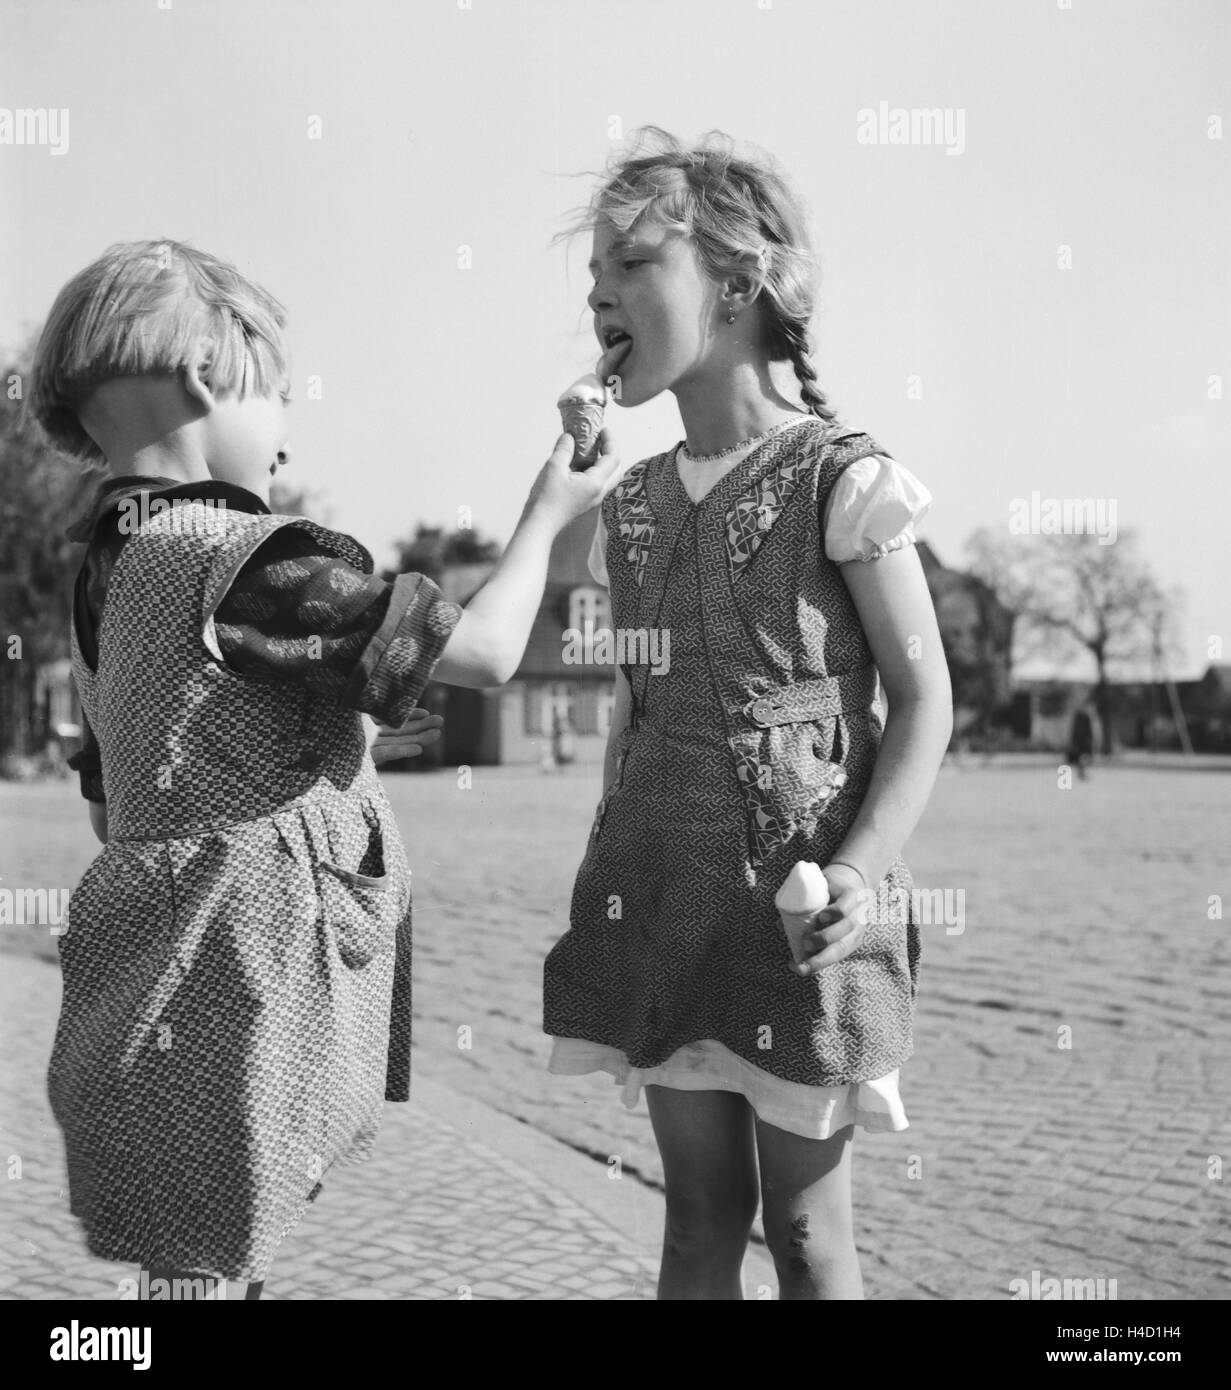 Kinder haben sich zur Sommerzeit ein Eis gekauft, Deutschland 1930er Jahre. Children enjoying an ice cream in the summertime, Germany 1930s. Stock Photo